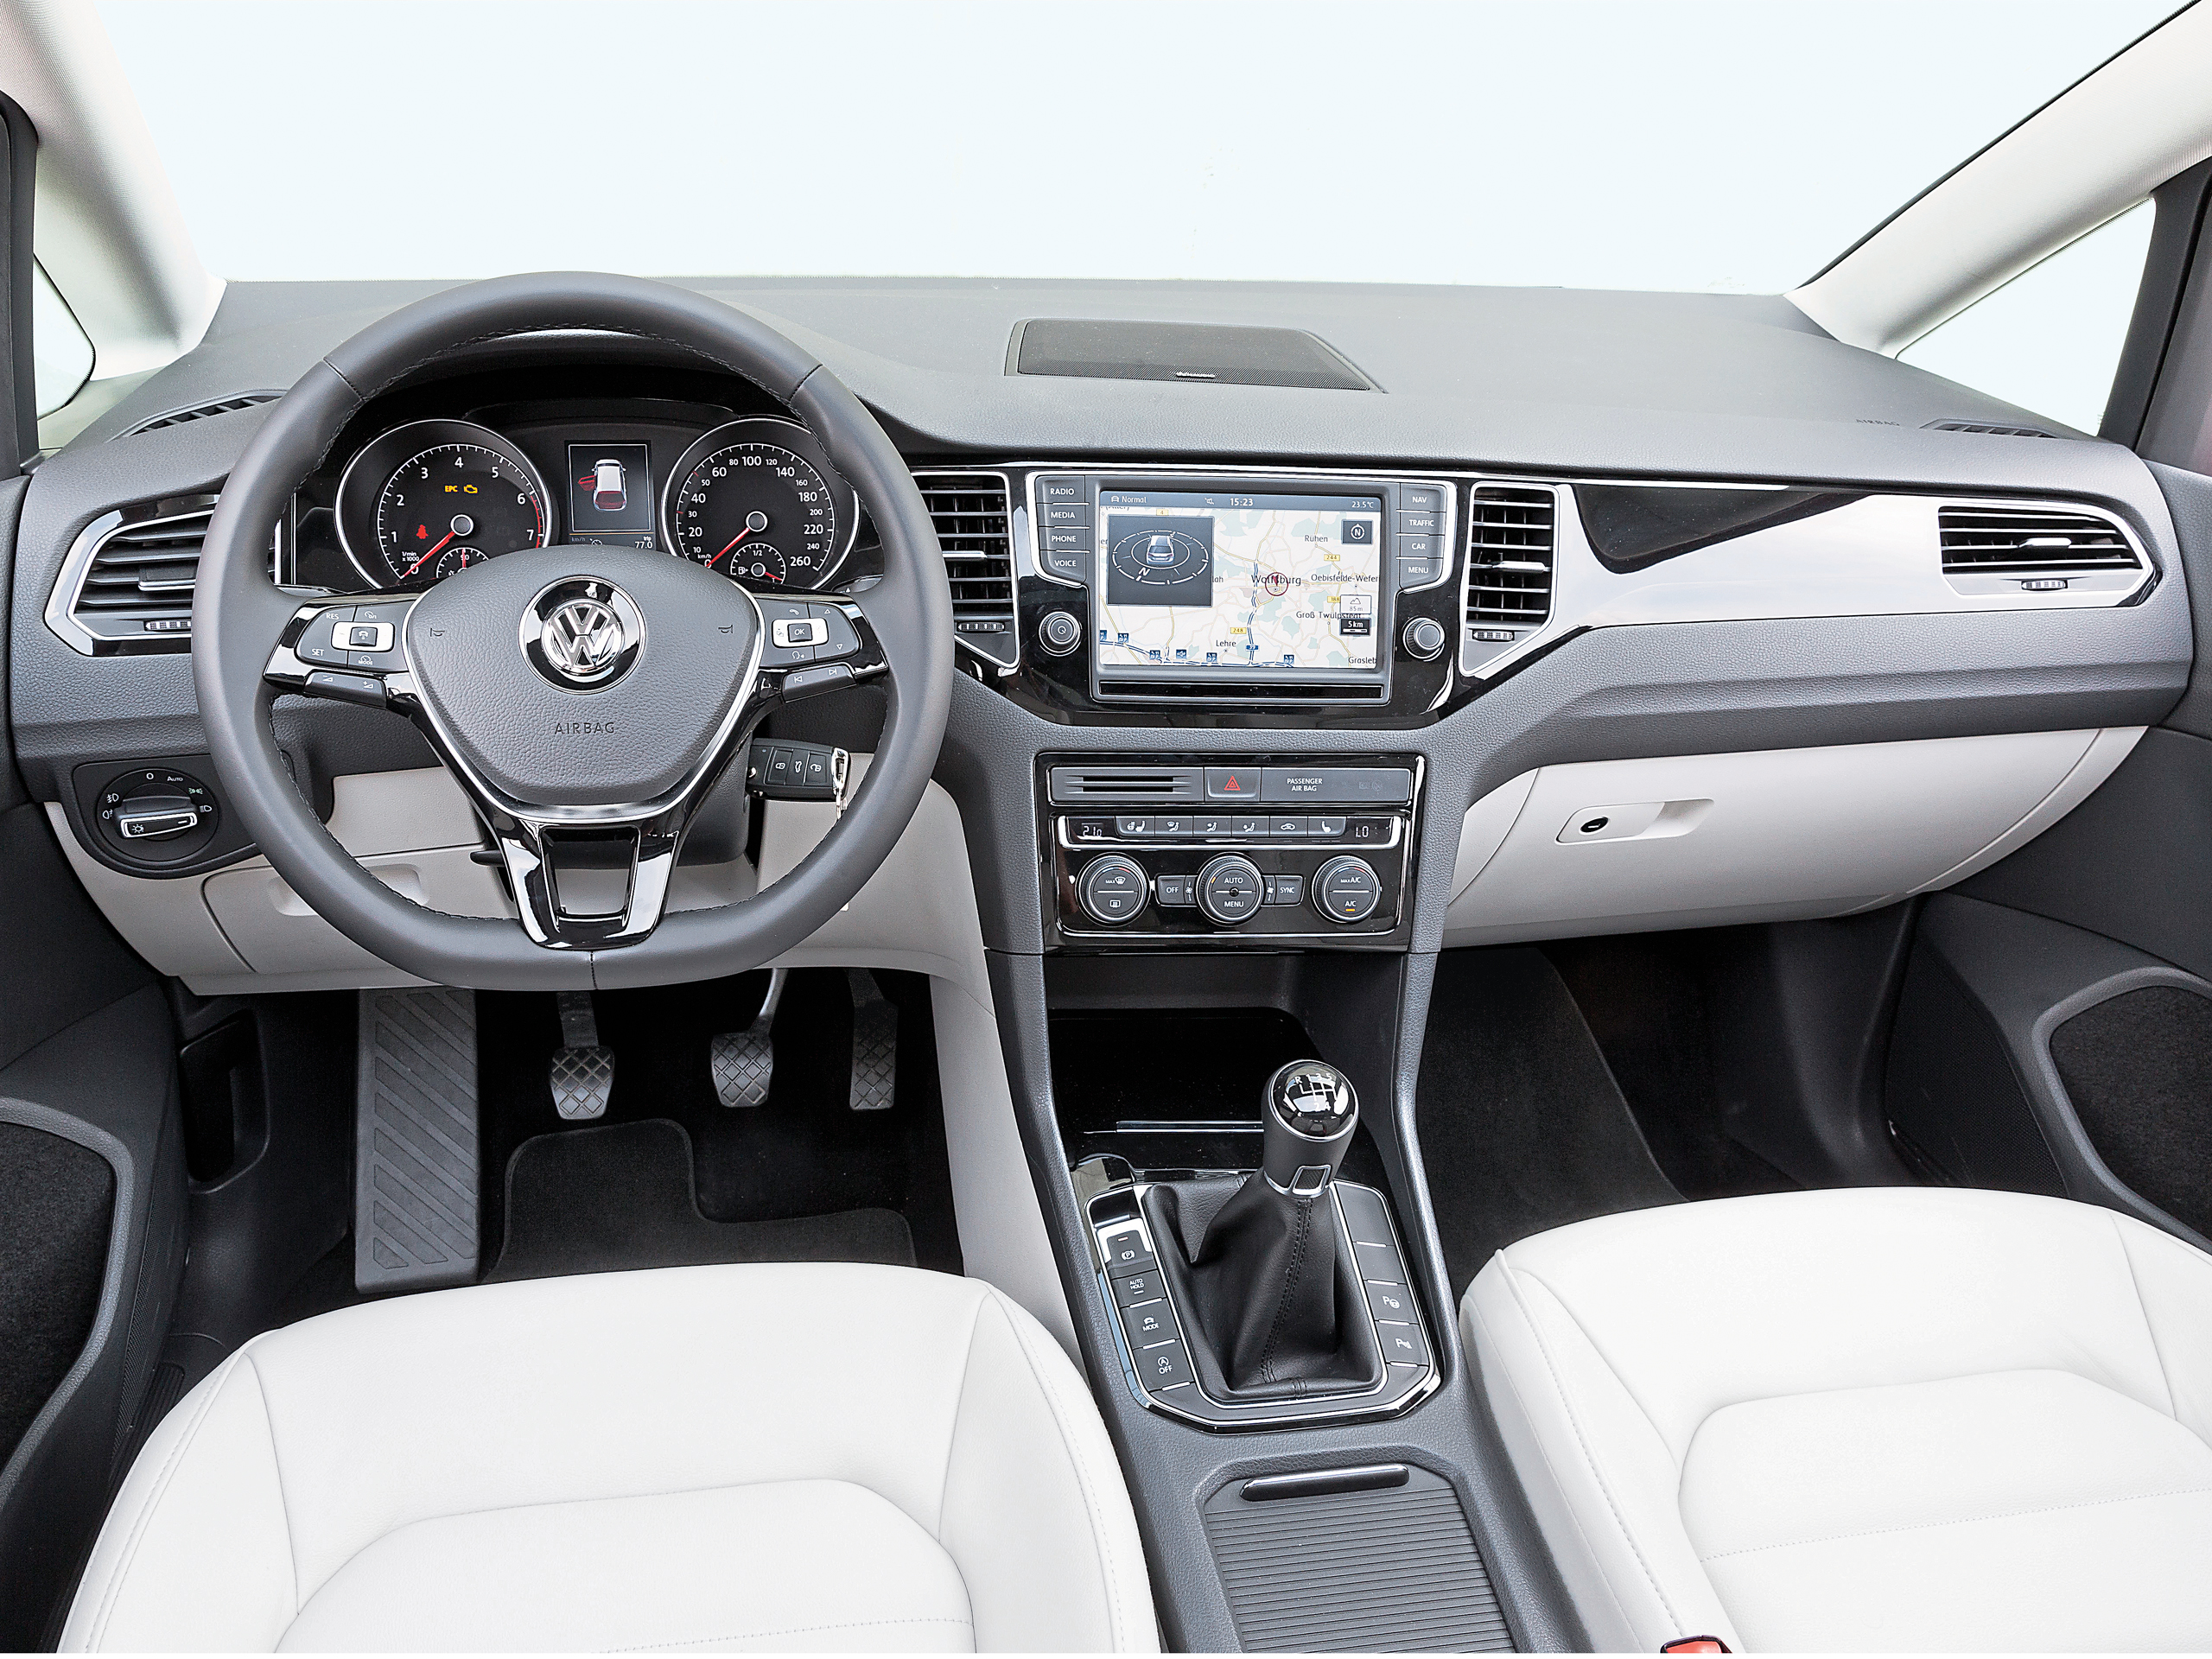 VW Golf Sportsvan: Neuer Golf-Ableger im Fahrbericht und technische